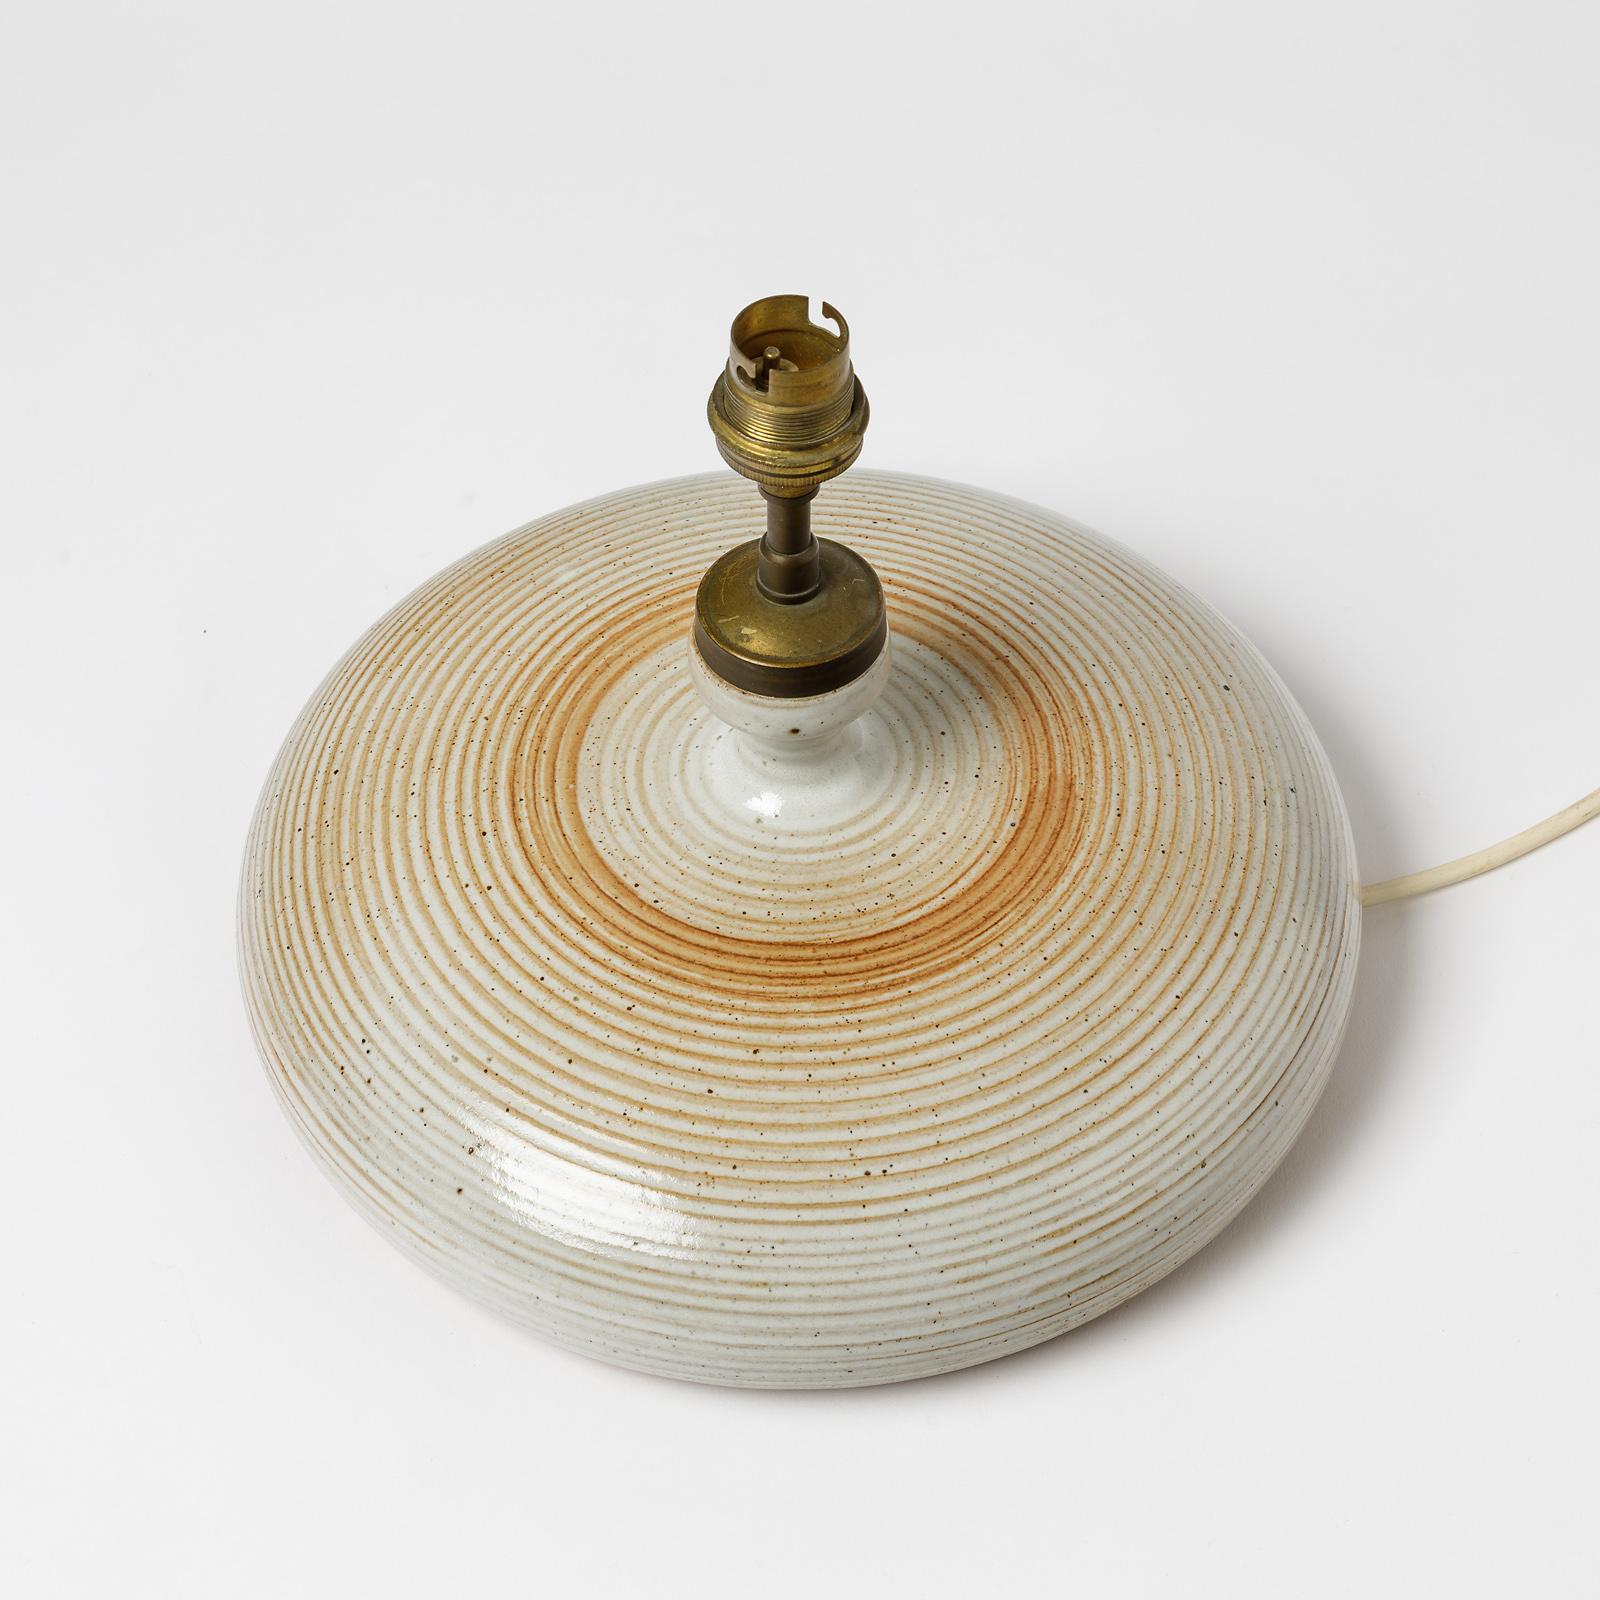 French Ceramic Table Lamp Attributed to La Borne Potters, circa 1960-1970